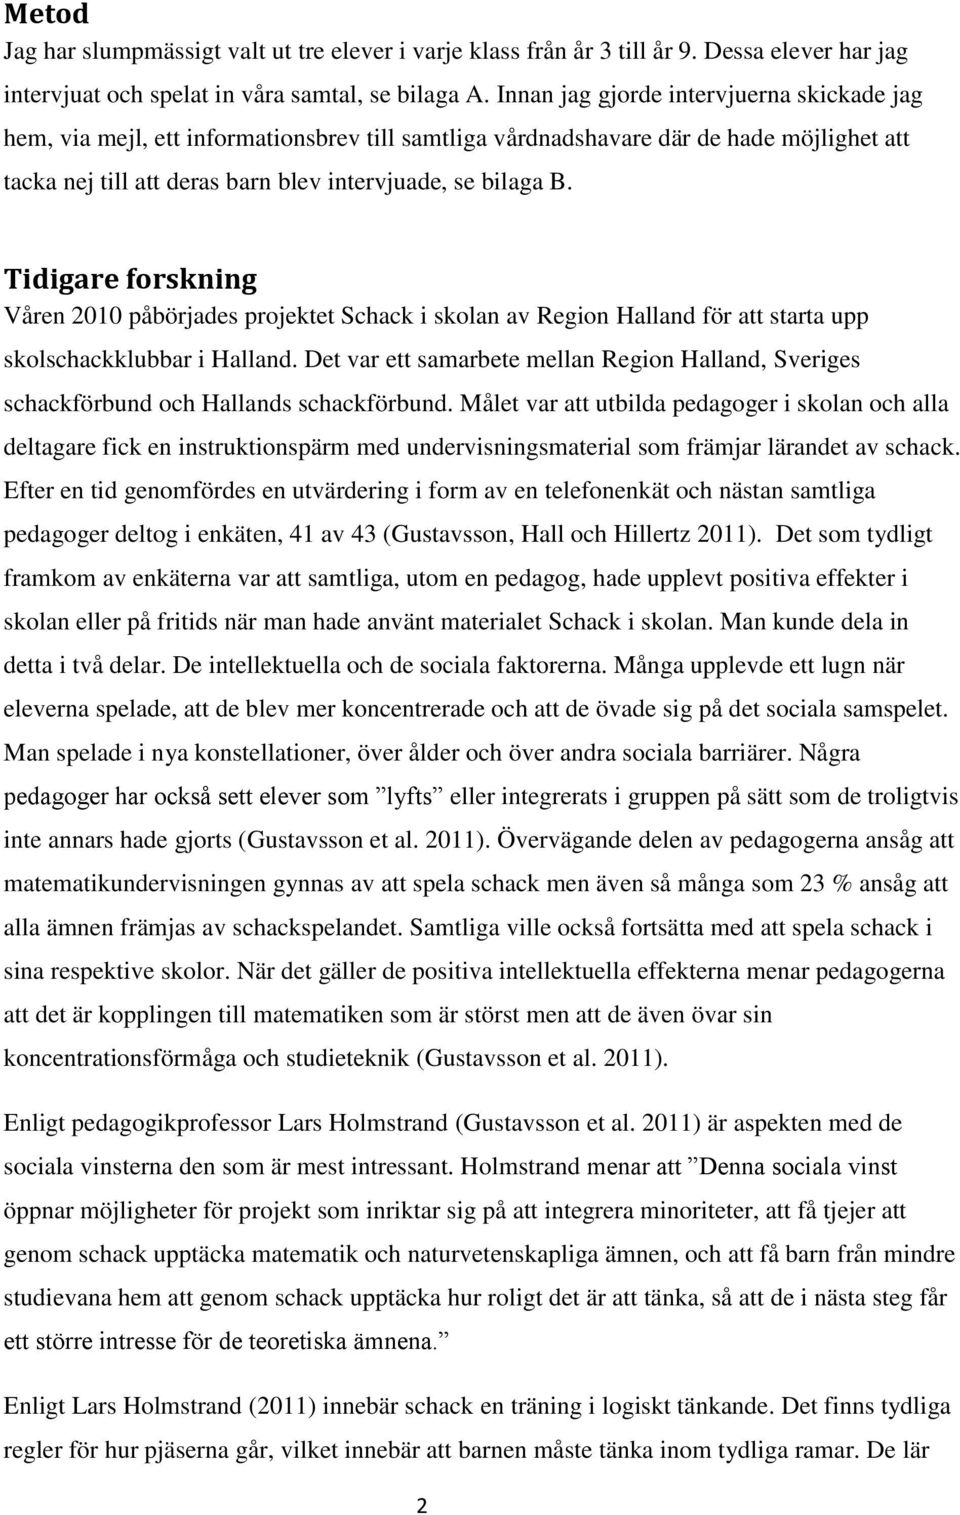 Tidigare forskning Våren 2010 påbörjades projektet Schack i skolan av Region Halland för att starta upp skolschackklubbar i Halland.